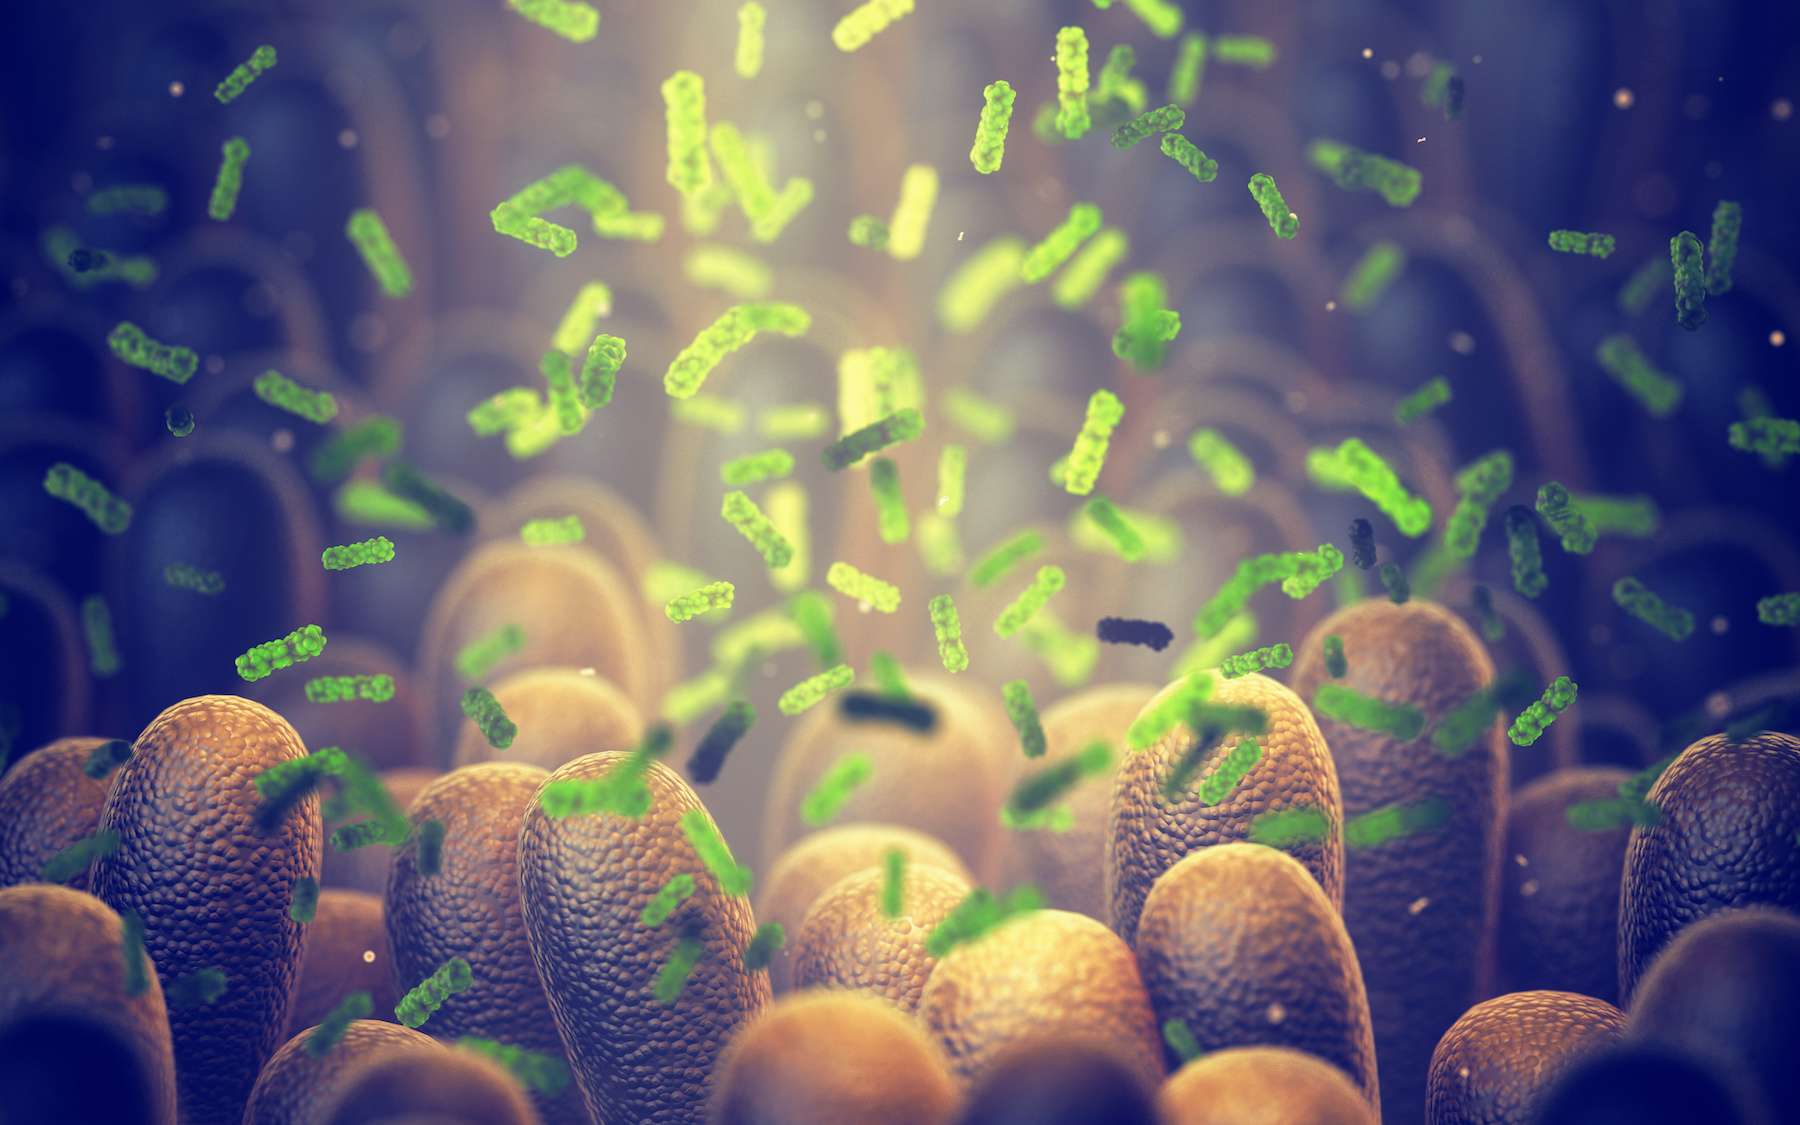 Des scientifiques chinois ont observé des perturbations dans le microbiote intestinal chez les personnes dépressives. © nobeastsofierce, Adobe Stock